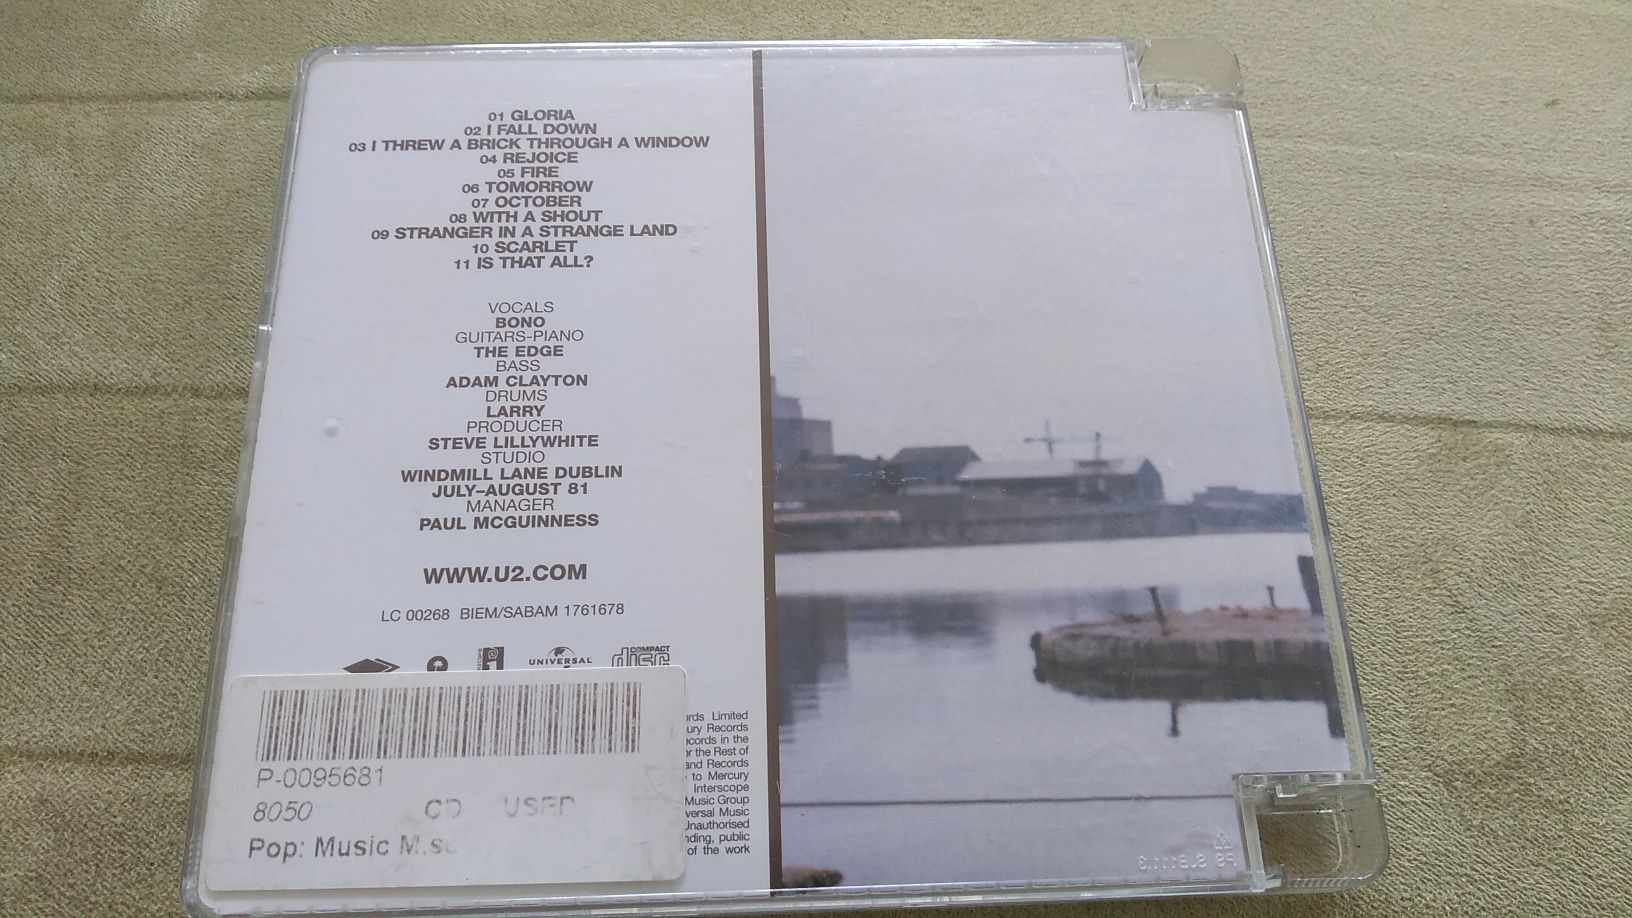 Płyta CD U2 Ostober